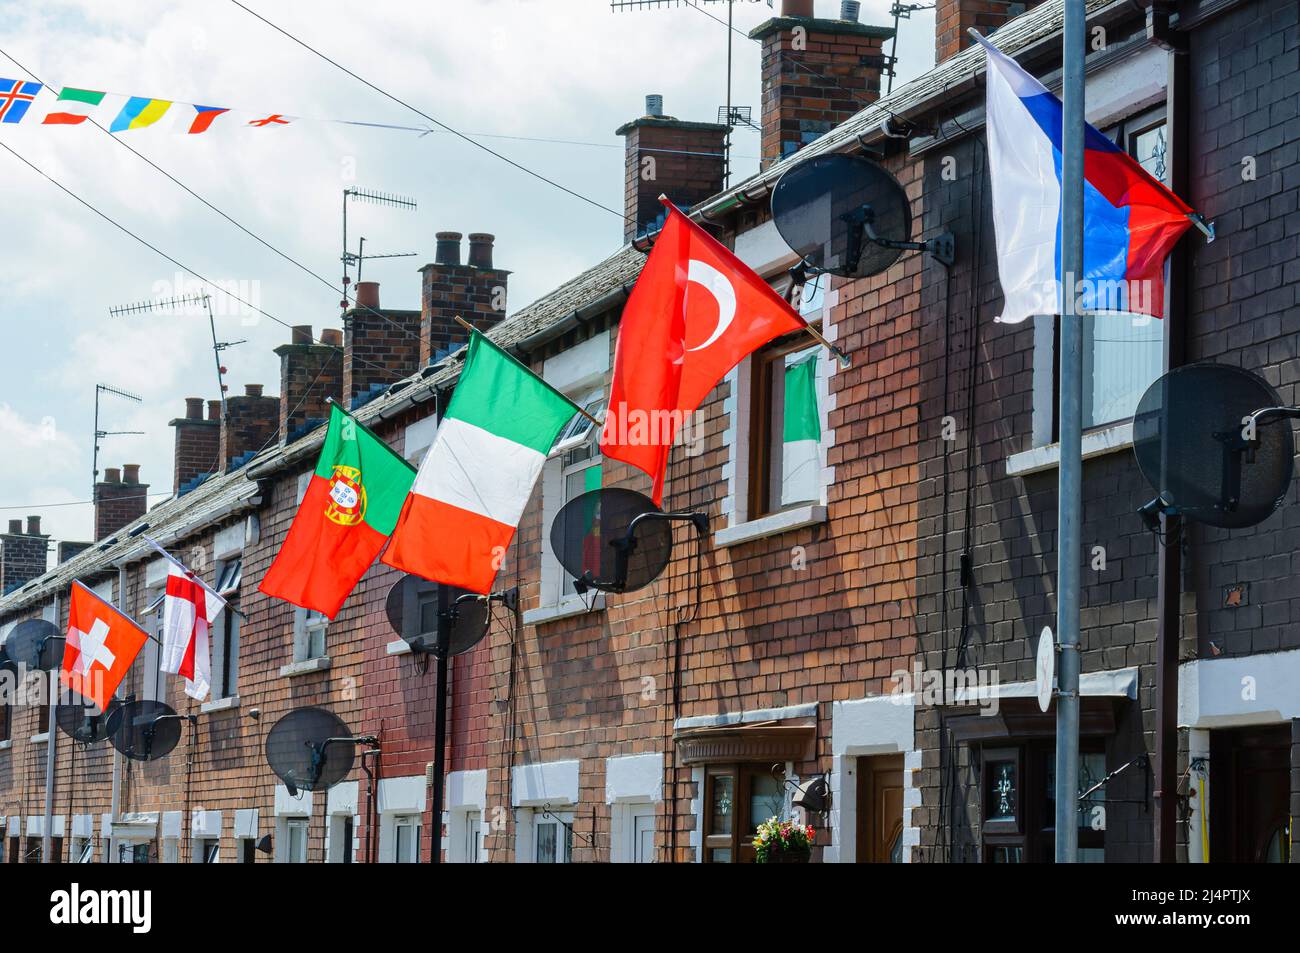 BELFAST, IRLANDA DEL NORTE. 04 JUN 2016: Las casas en Iris Drive en West Belfast están decoradas con las banderas de los 24 países que han calificado para la Eurocopa 2016. Los residentes organizaron una barriada, con cada casa que tenía que volar la bandera de su país. Se cree que es la primera vez que las banderas de Inglaterra e Irlanda del Norte se enarbolan voluntariamente en esta zona de las repúblicas del oeste de Belfast. Foto de stock